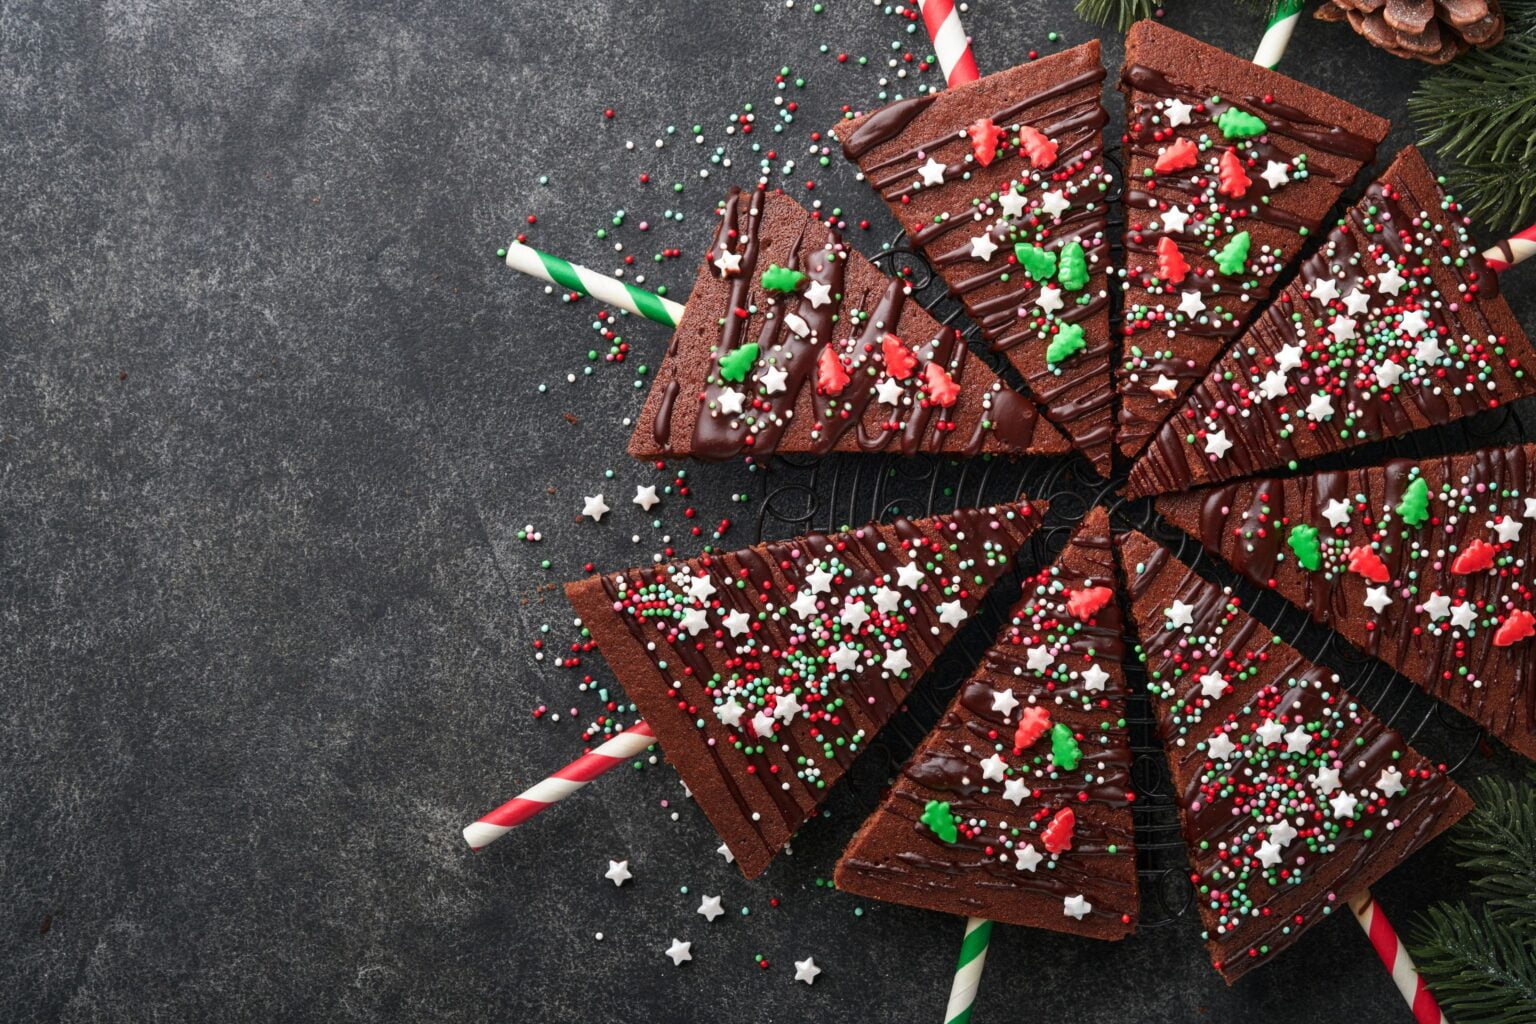 Alberelli di Natale brownies: da mordere e gustare durante le feste